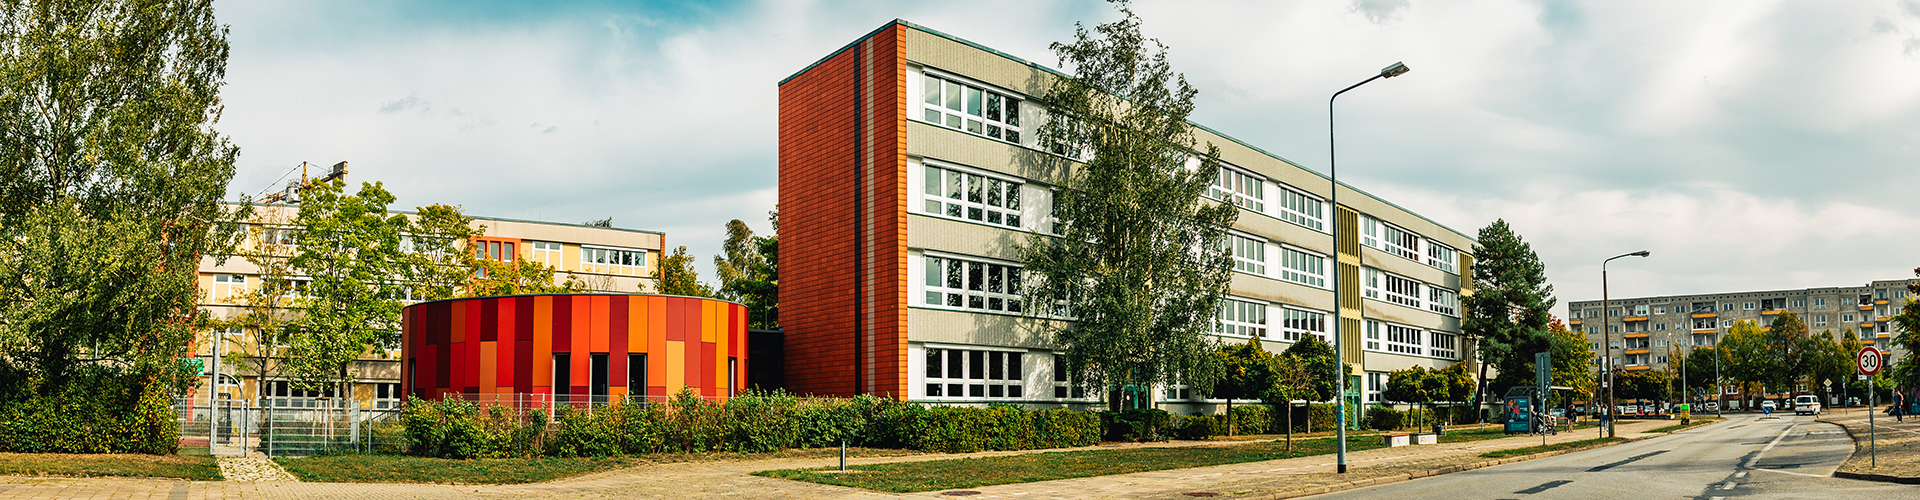 Blick auf das Alexander-von-Humboldt-Gymnasium in der Makarenkostraße 54 in Greifswald